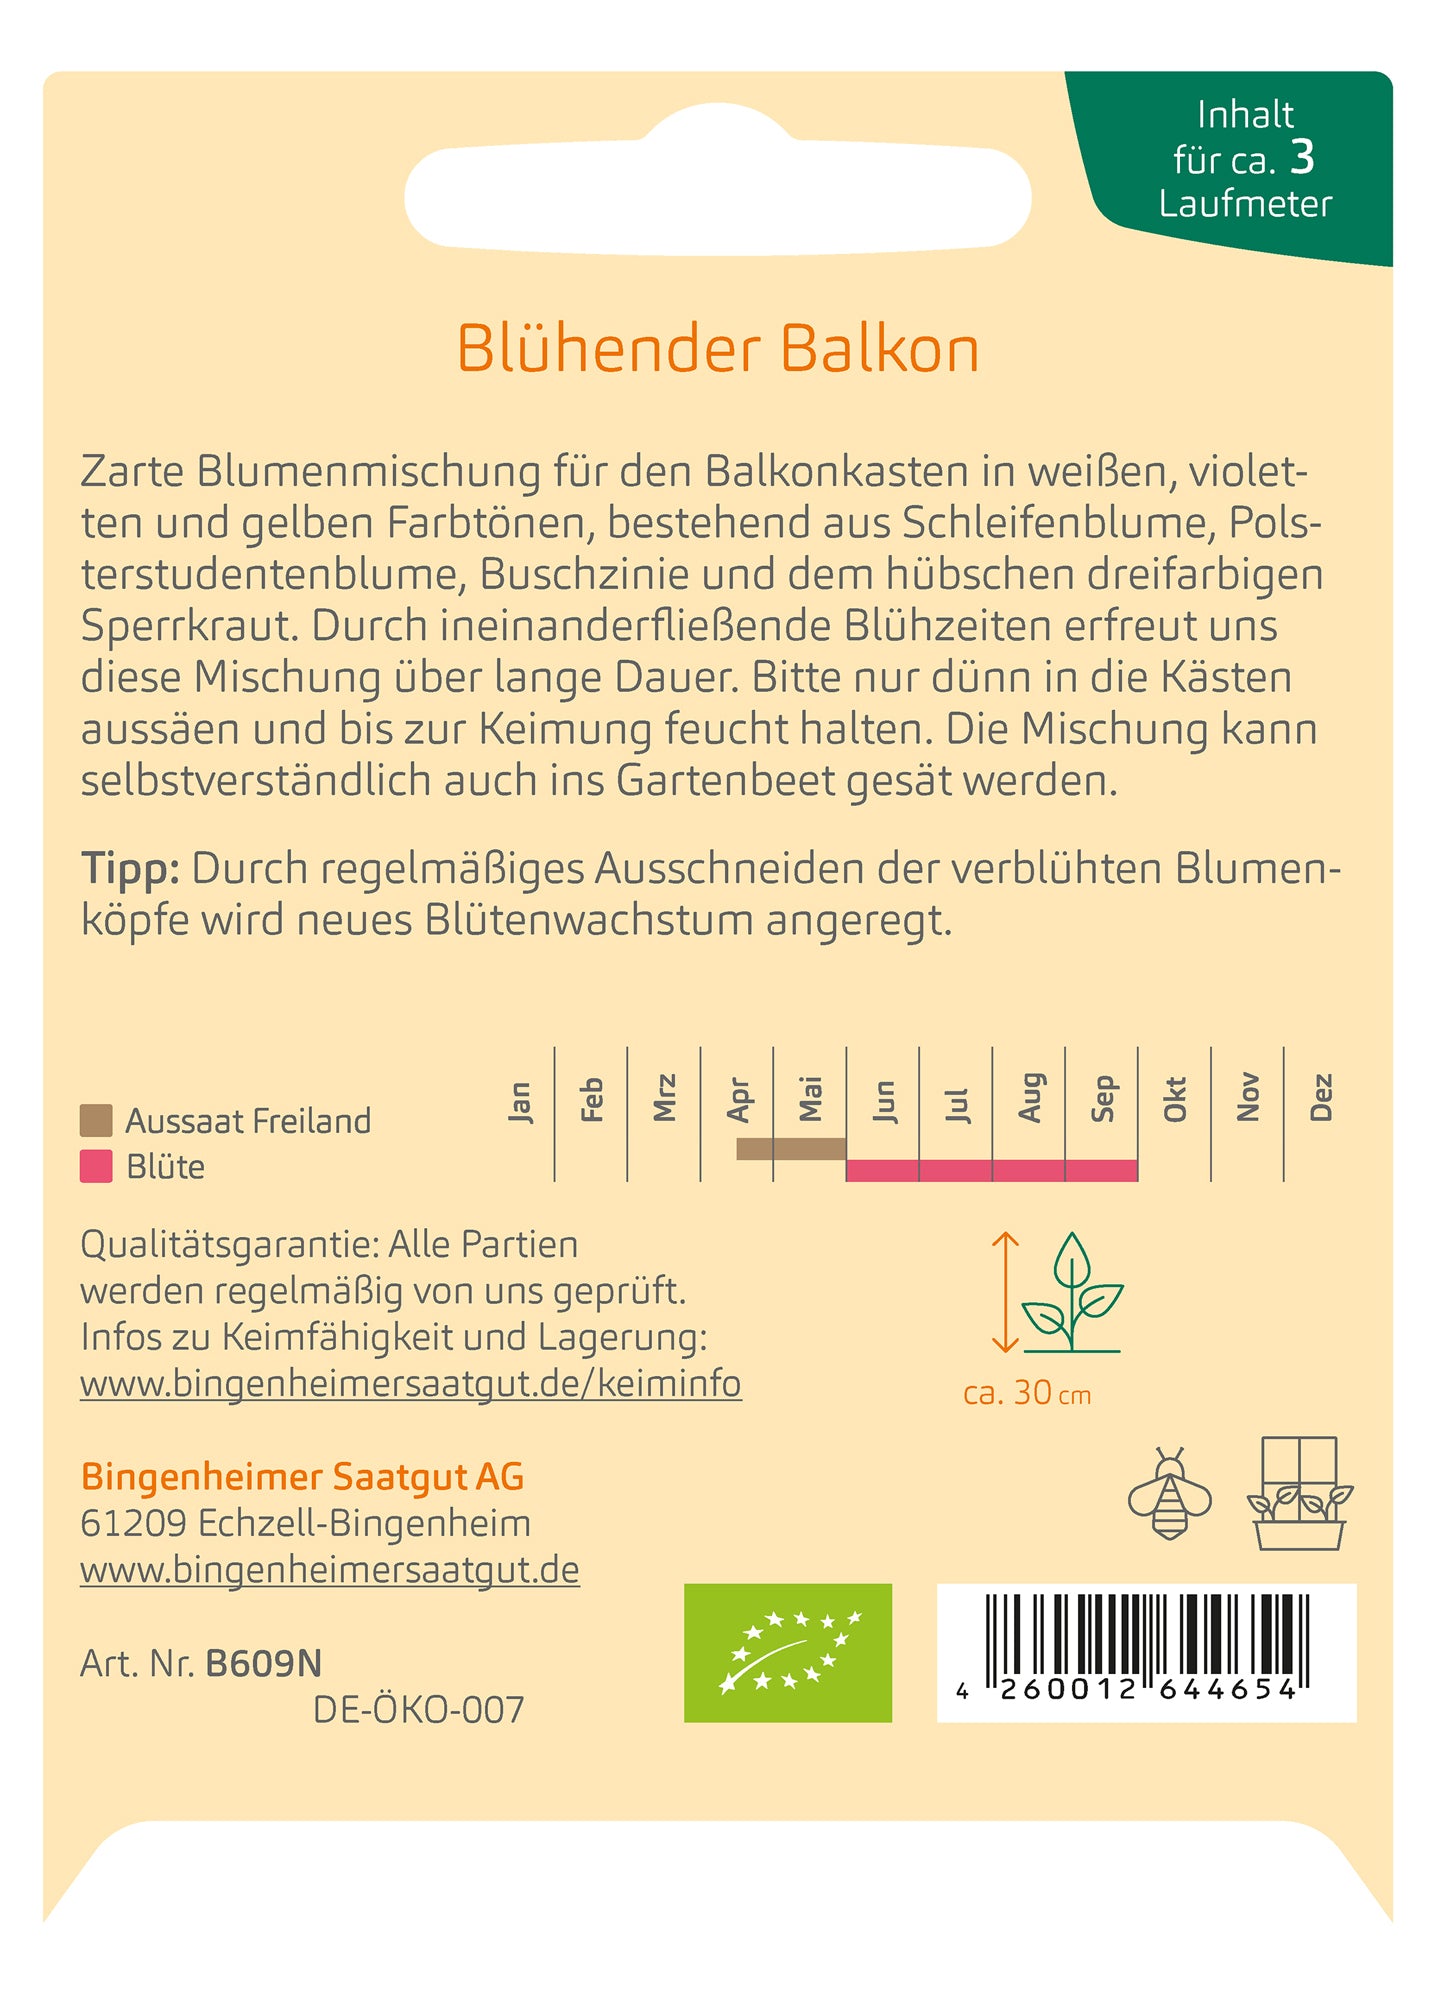 Blühender Balkon - Sommerblumenmischung | BIO Blumensamenmischung von Bingenheimer Saatgut